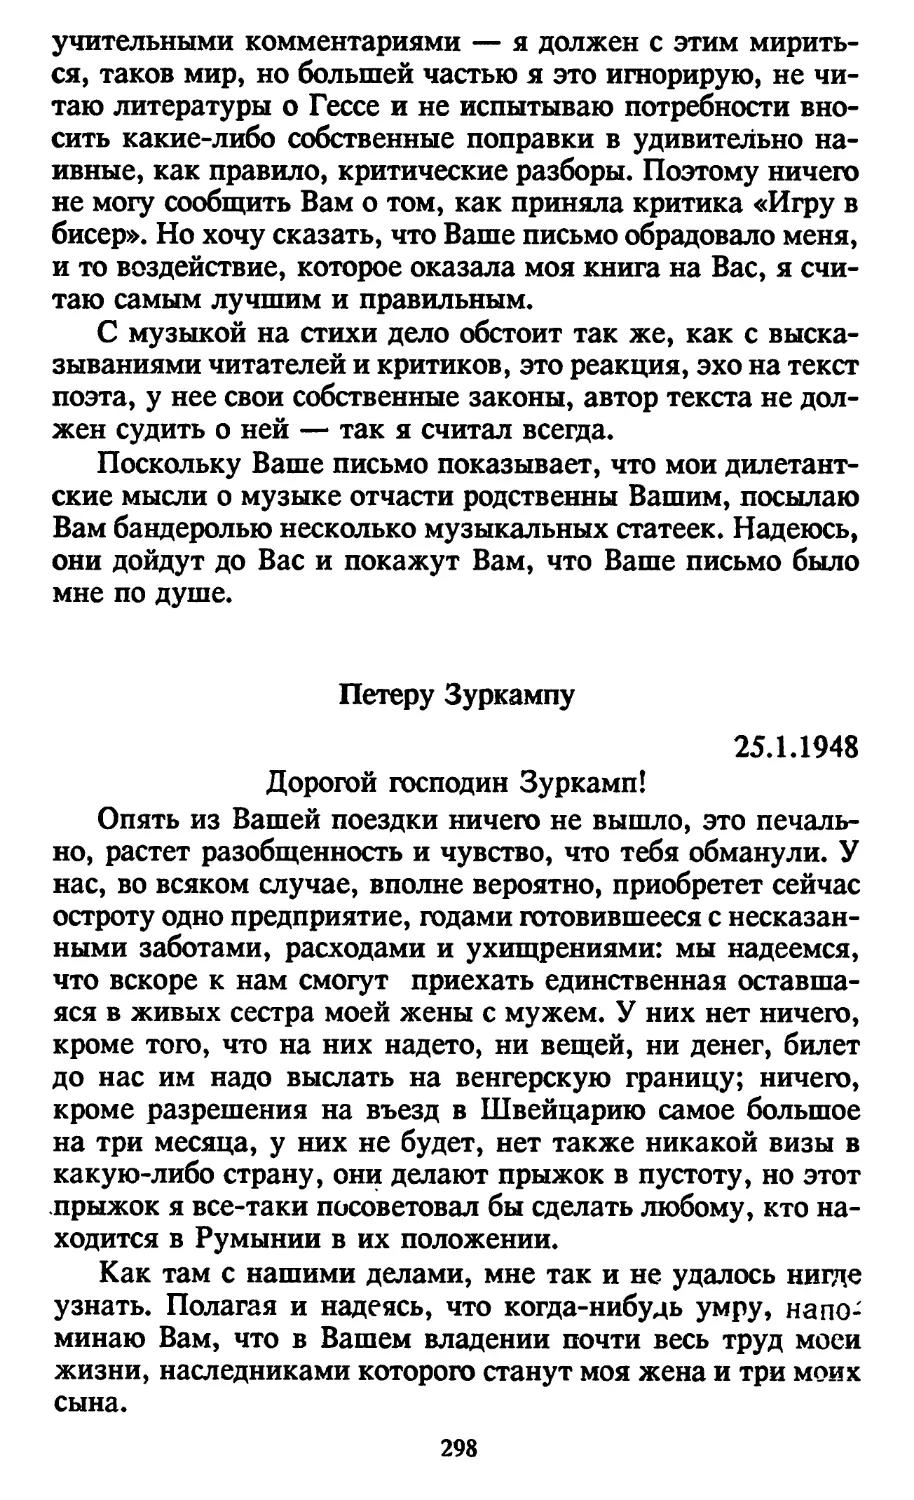 Петеру Зуркампу. 25.1.1948